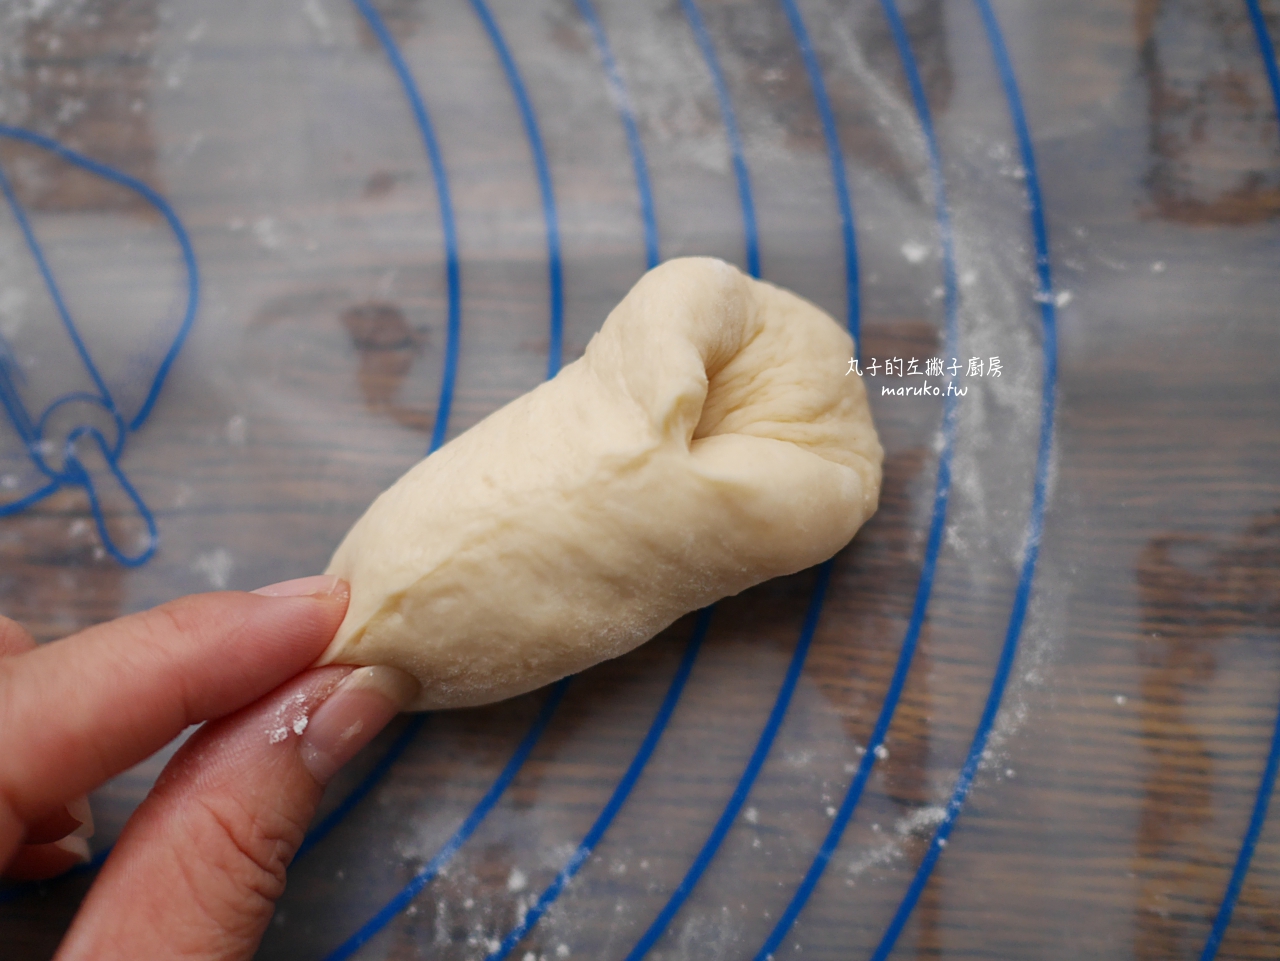 【食譜】脆皮奶油捲麵包 基本麵團 日本 Twinbird 多功能製麵包機 @Maruko與美食有個約會